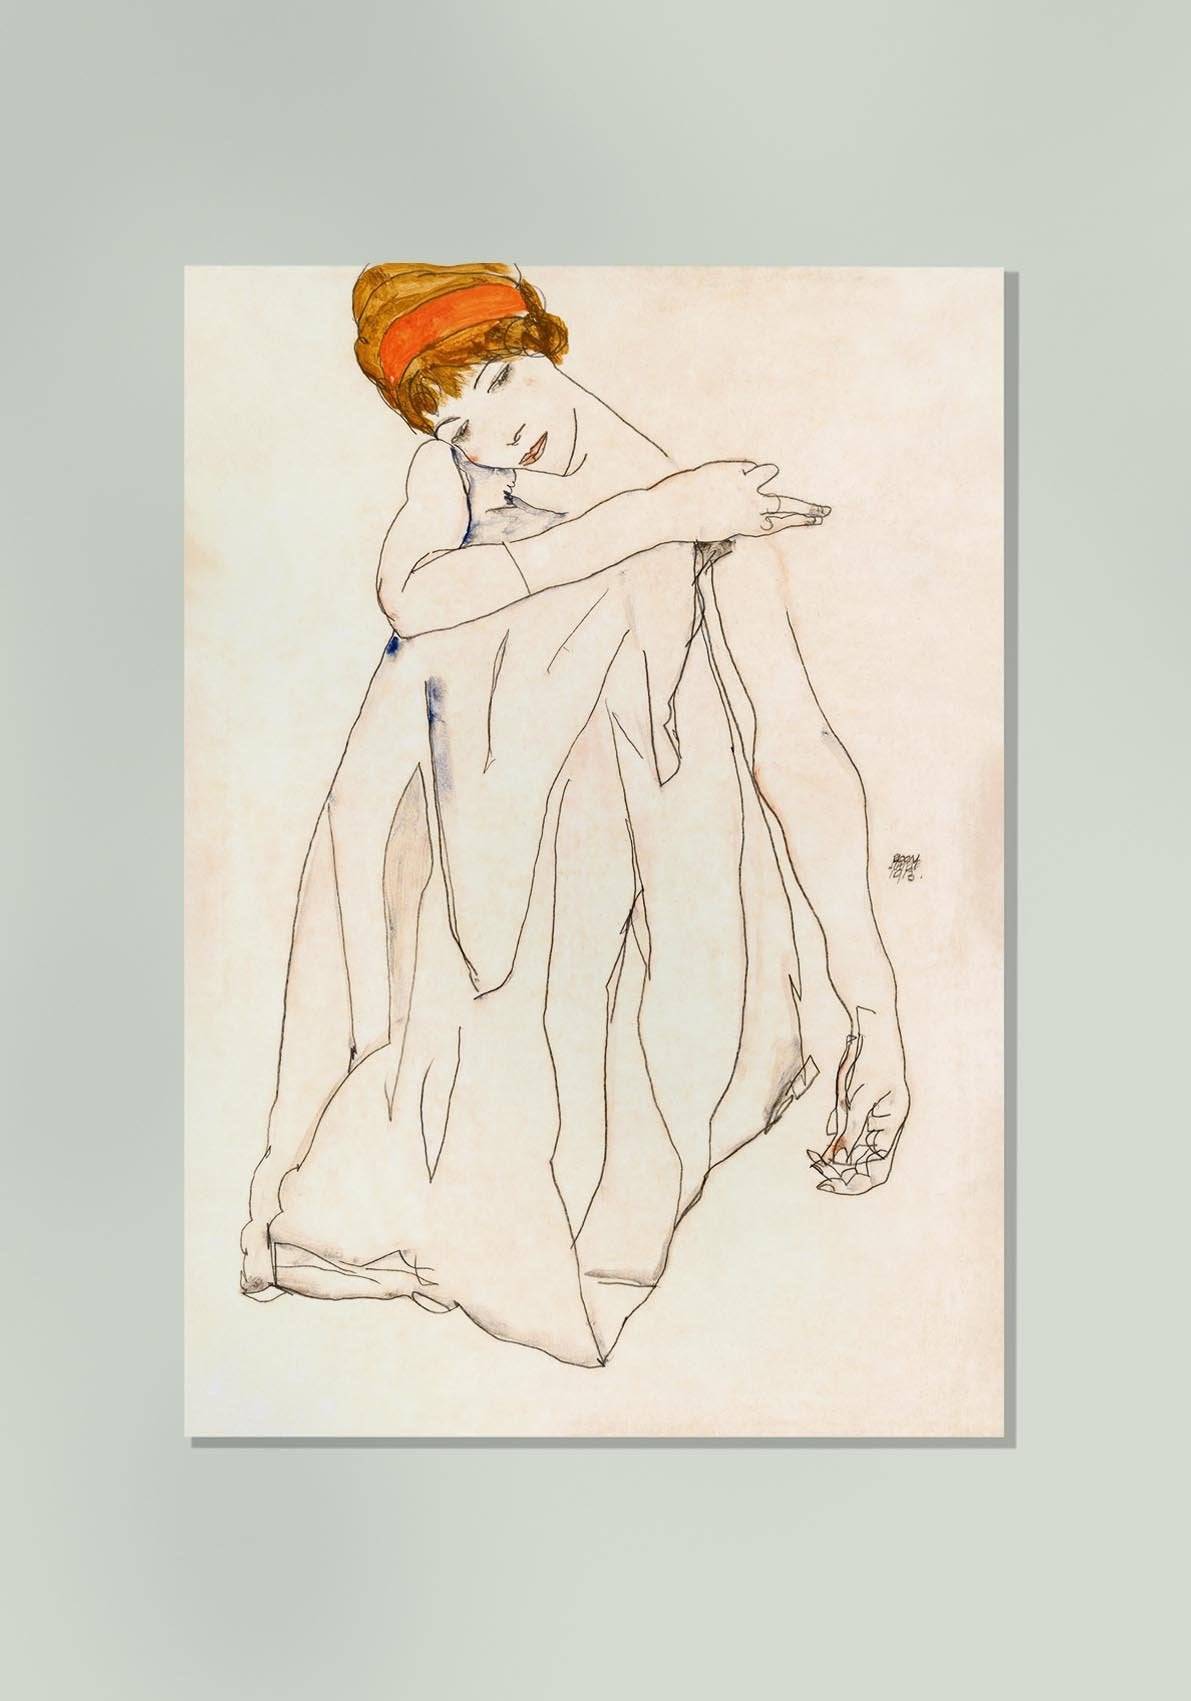 The Dancer (Die Tänzerin), 1913 by Egon Schiele